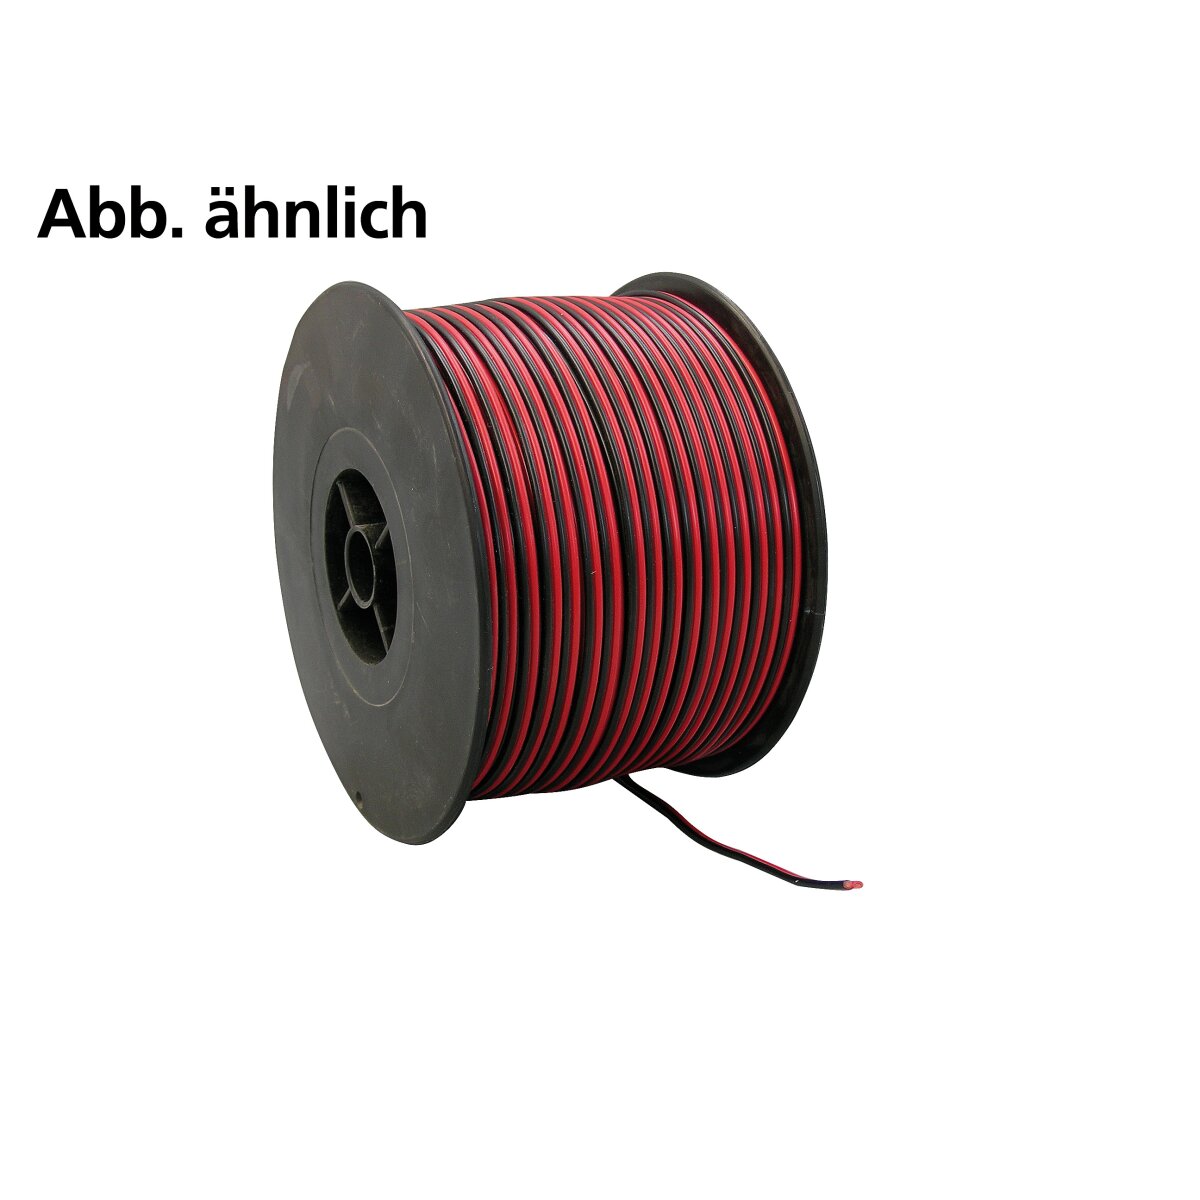 Kabel Futaba 2 x 0,25 mm² 100m flach rot/schwarz  